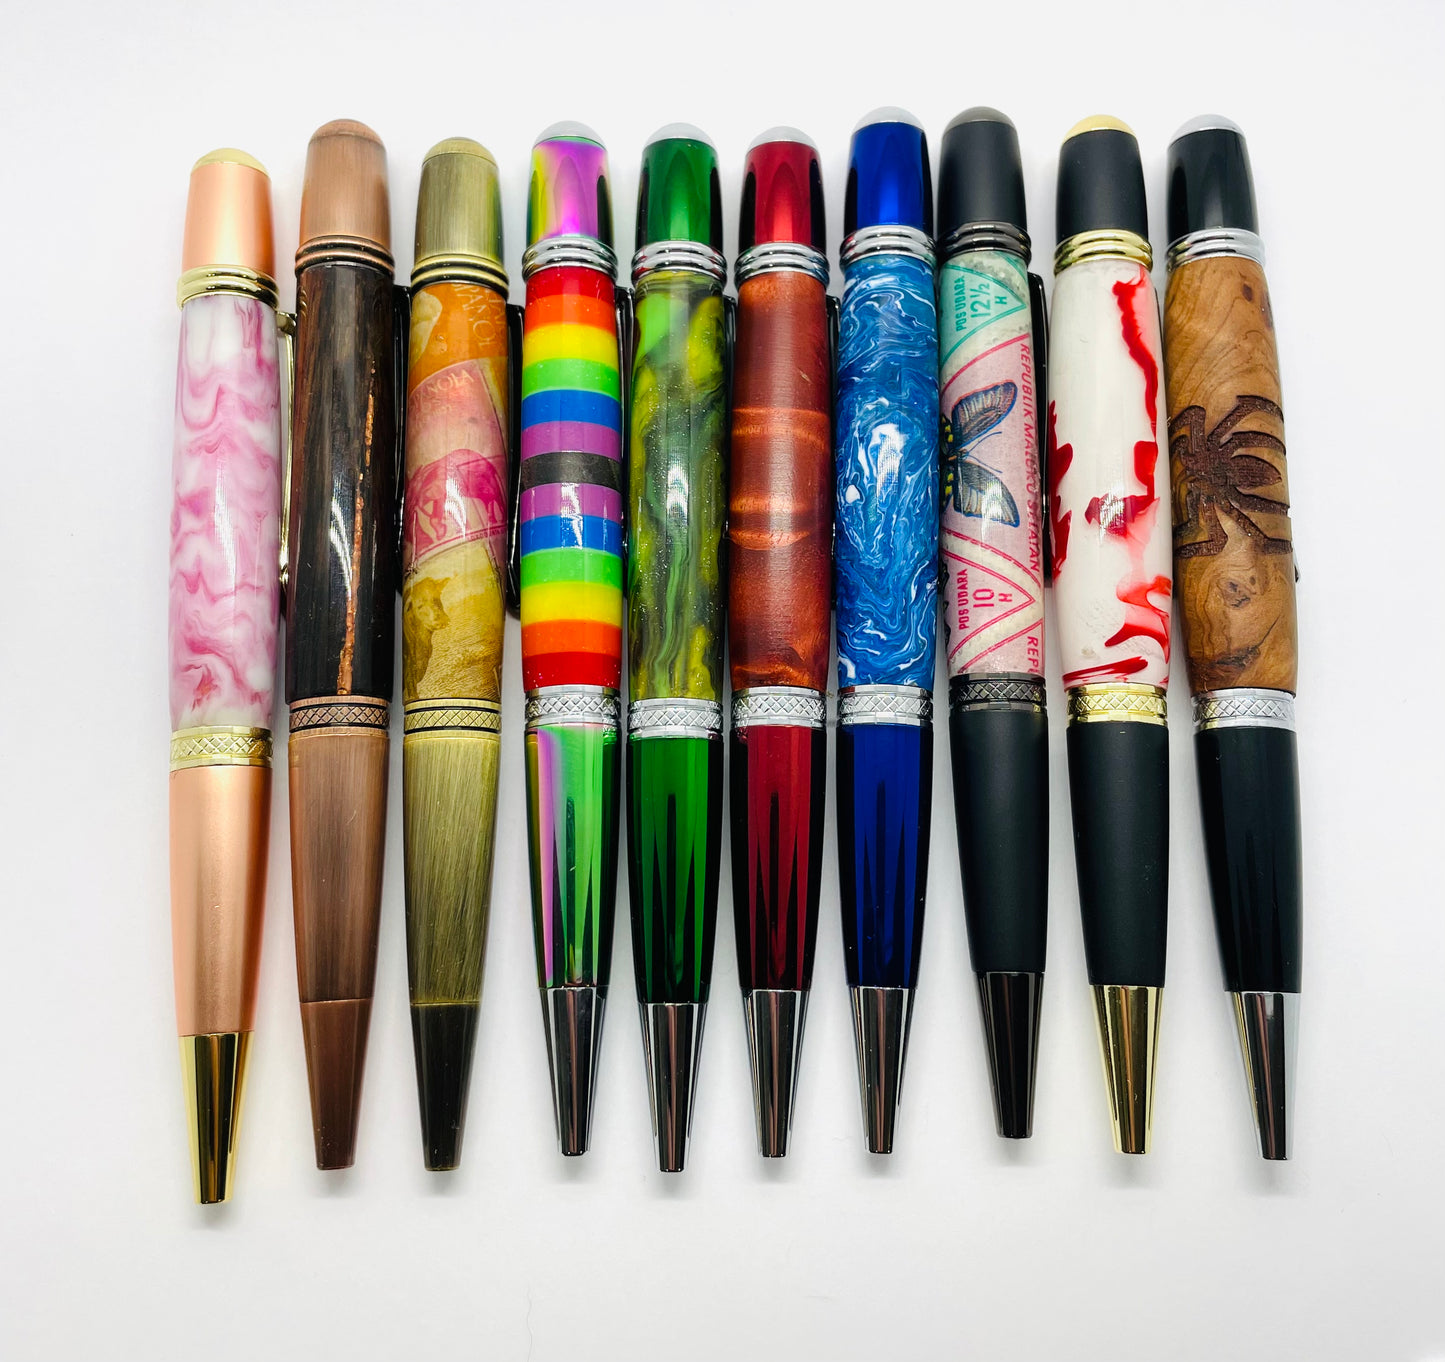 Monarch pen kit: Antique rose copper